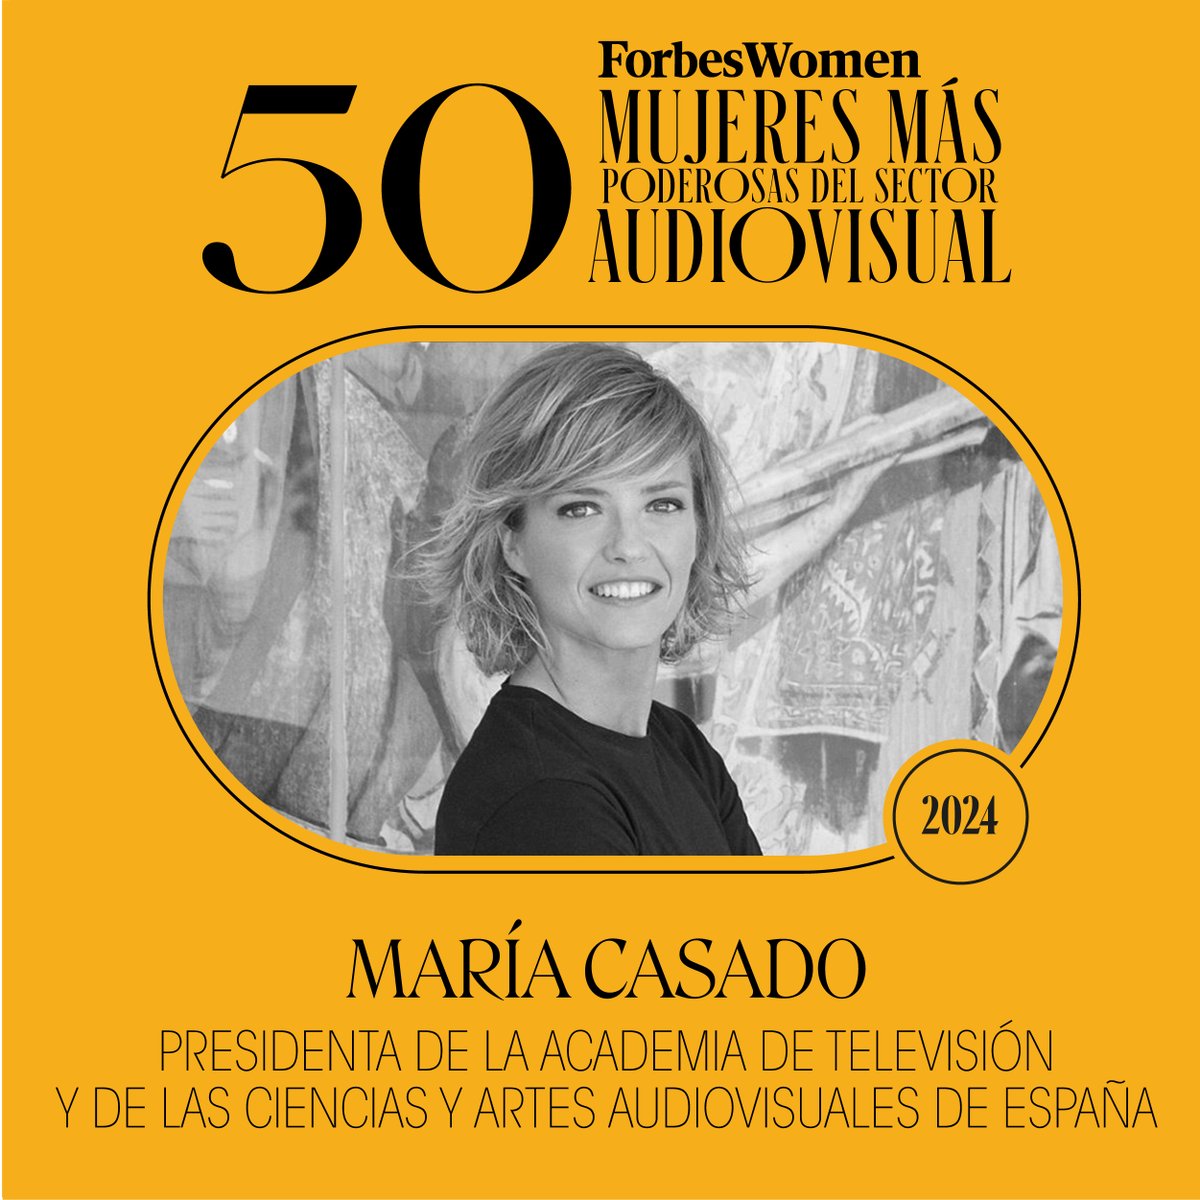 @MariaCasado_TV | Presidenta de la @academia_tv